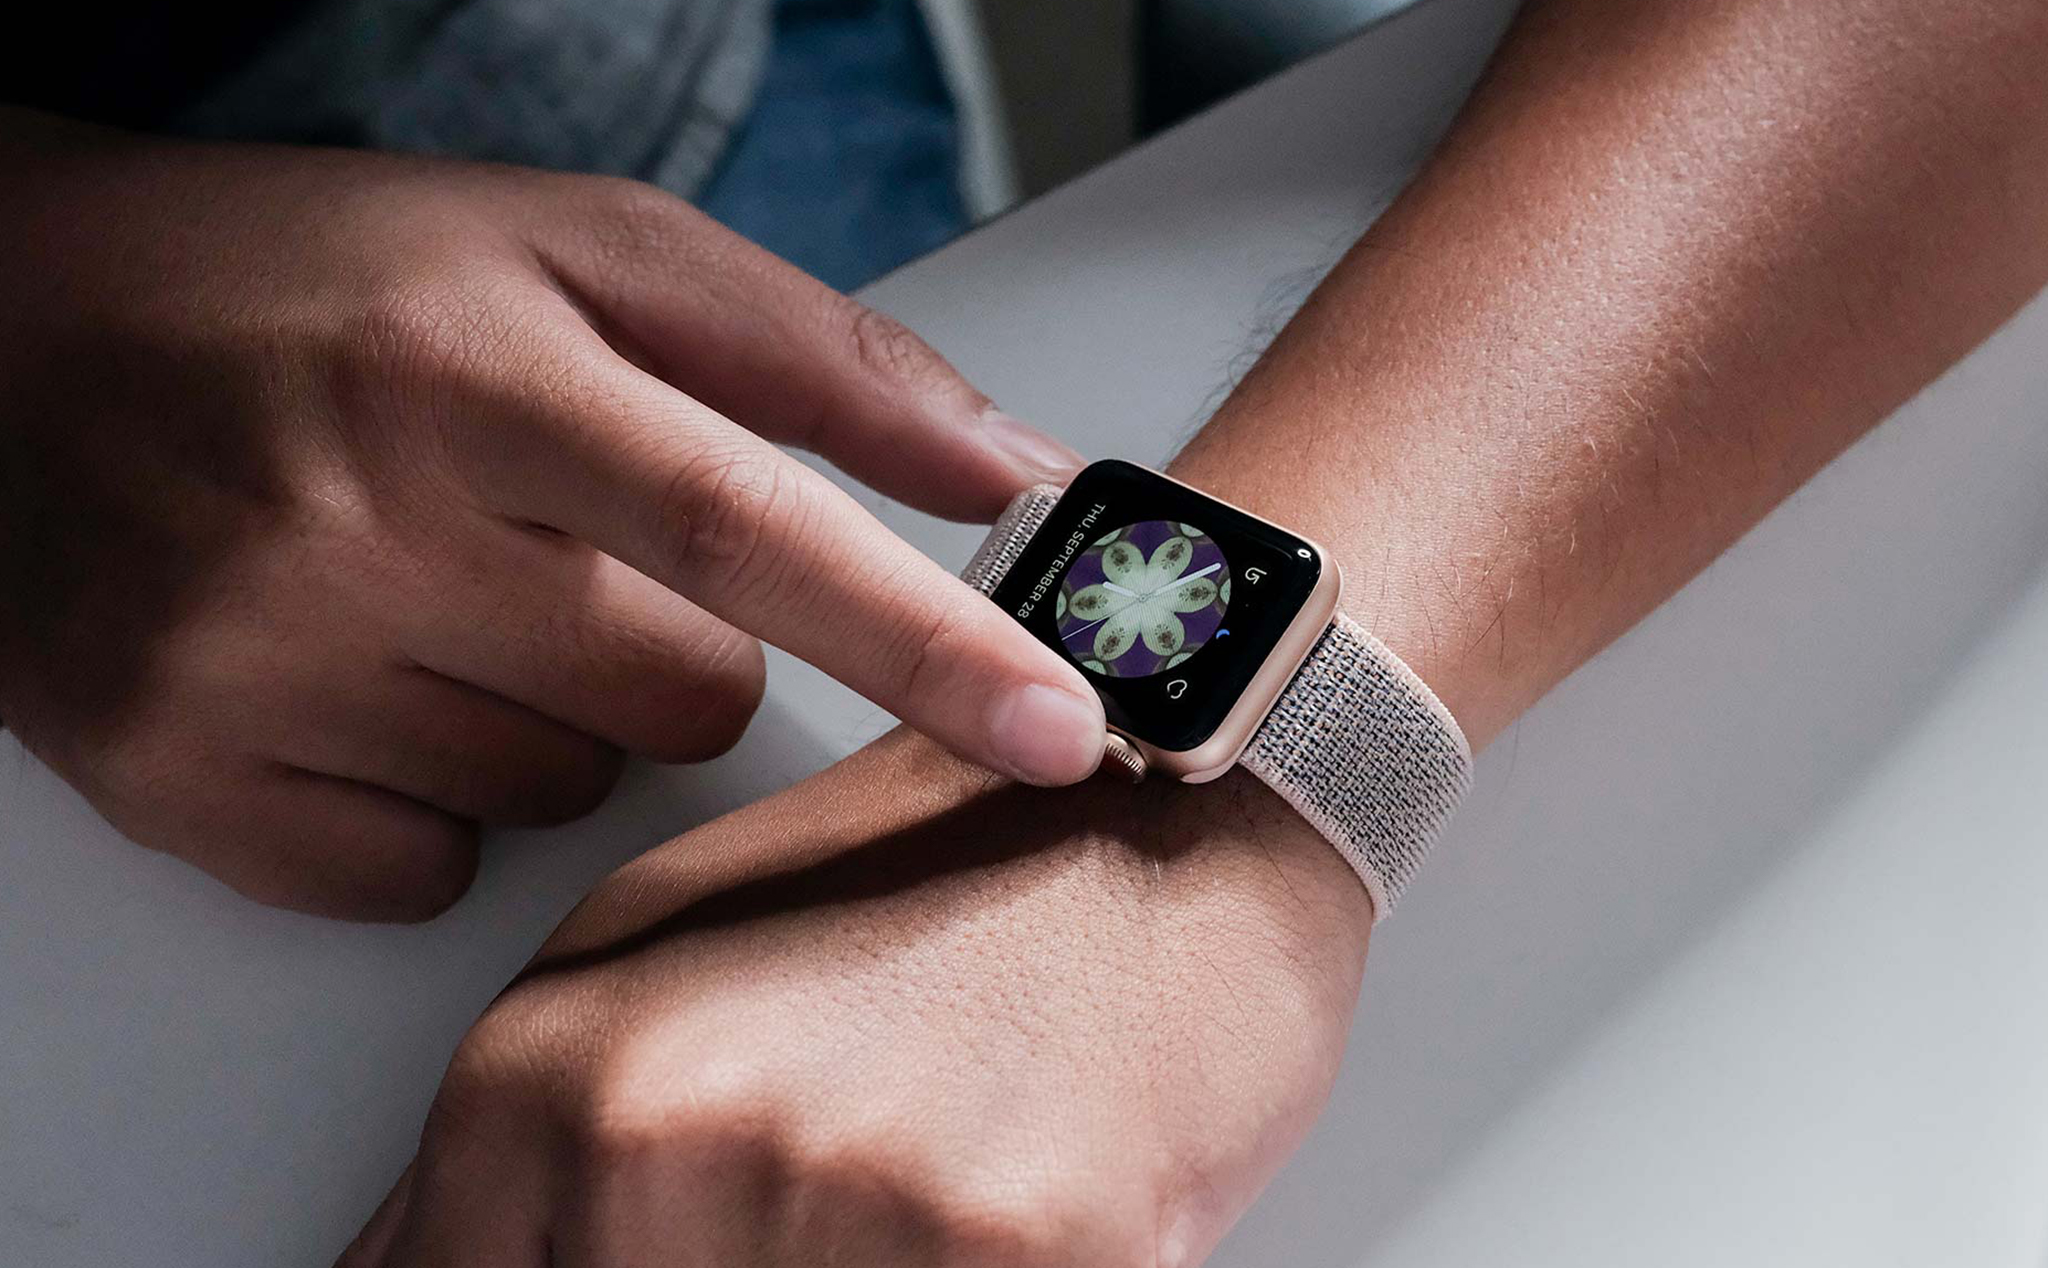 Tổng hợp tin đồn về Apple Watch Series 4: màn hình lớn hơn, pin lâu hơn, không còn nút bấm vật lý